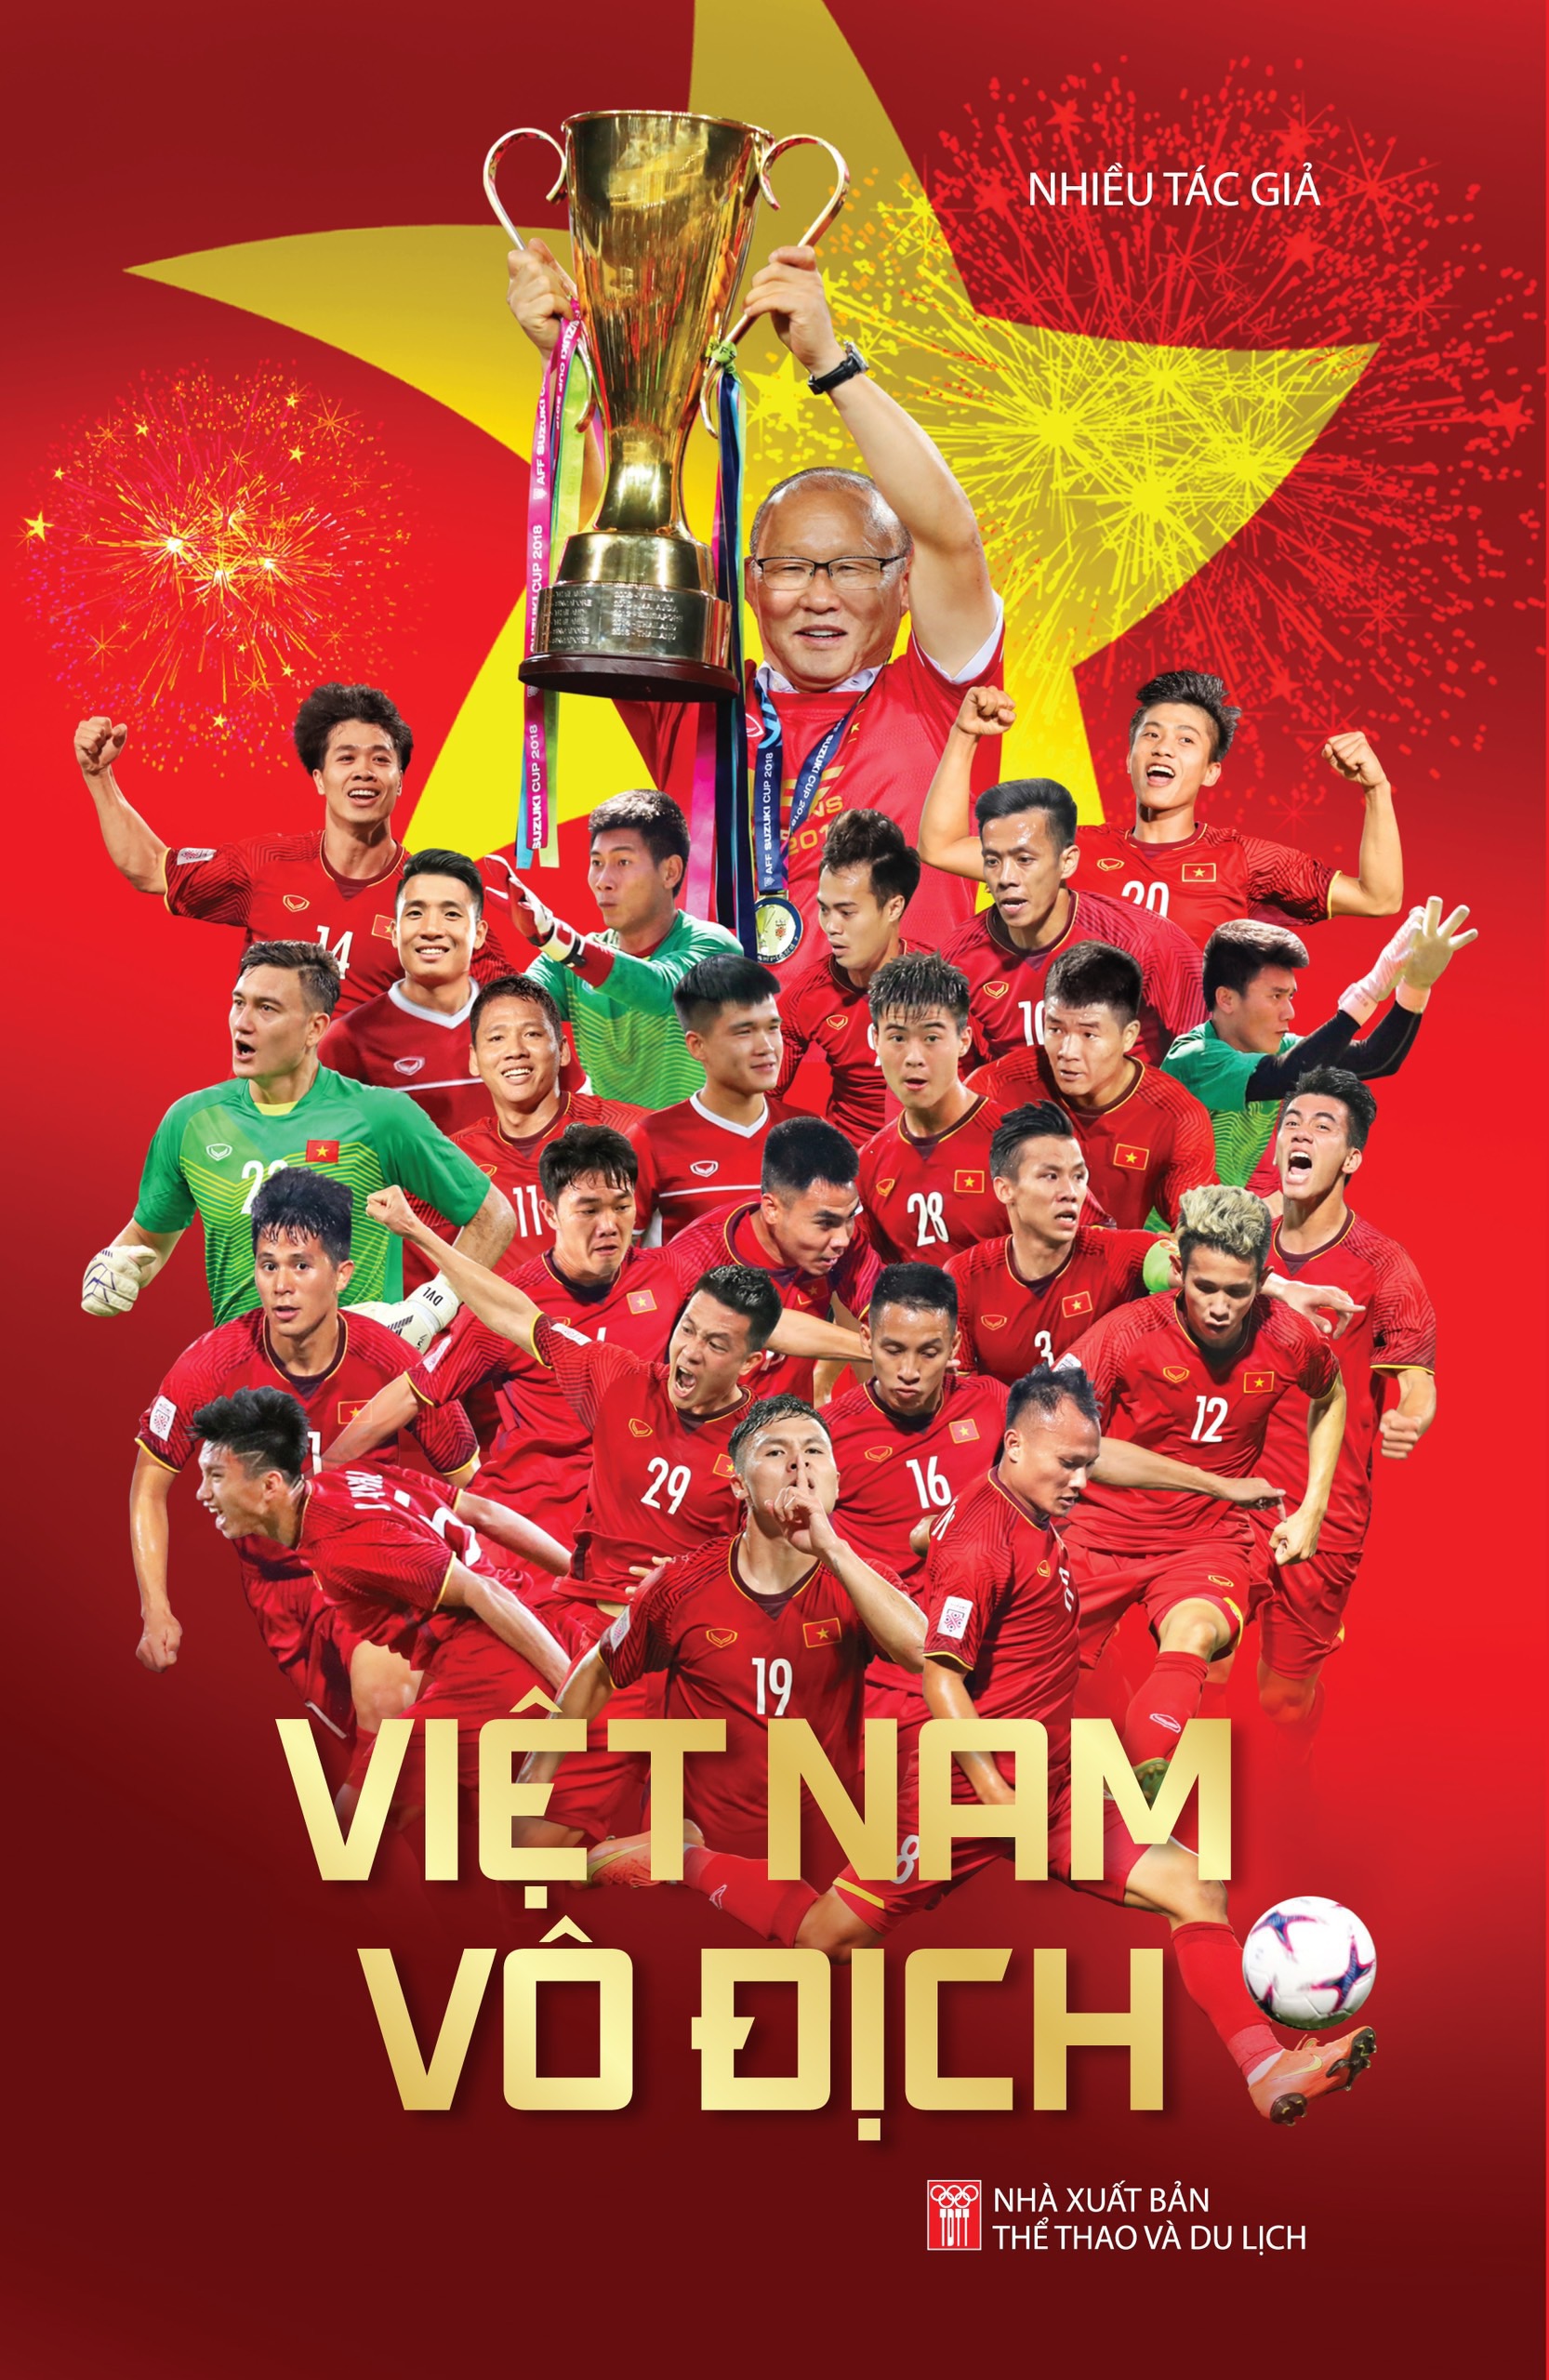 Tranh ảnh poster treo đội tuyển bóng đá Việt Nam 3-6 tấm a4 khác nhau